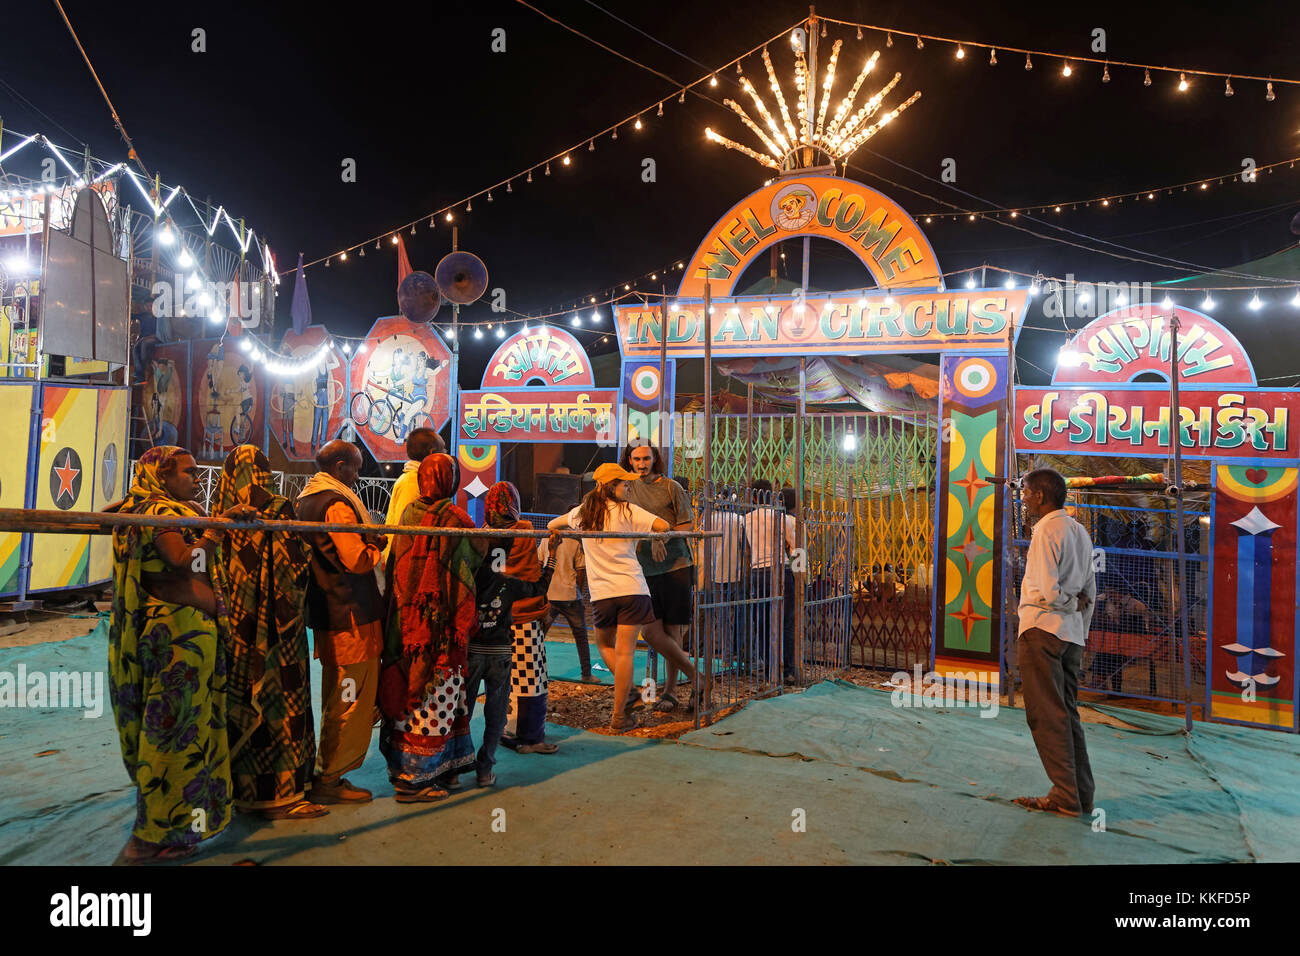 PUSHKAR, INDIA, 29 de octubre de 2017 : además del mercado de compraventa de animales, Pushkar tiene un festival de música y danzas folclóricas, ruedas de ferris, magia s Foto de stock